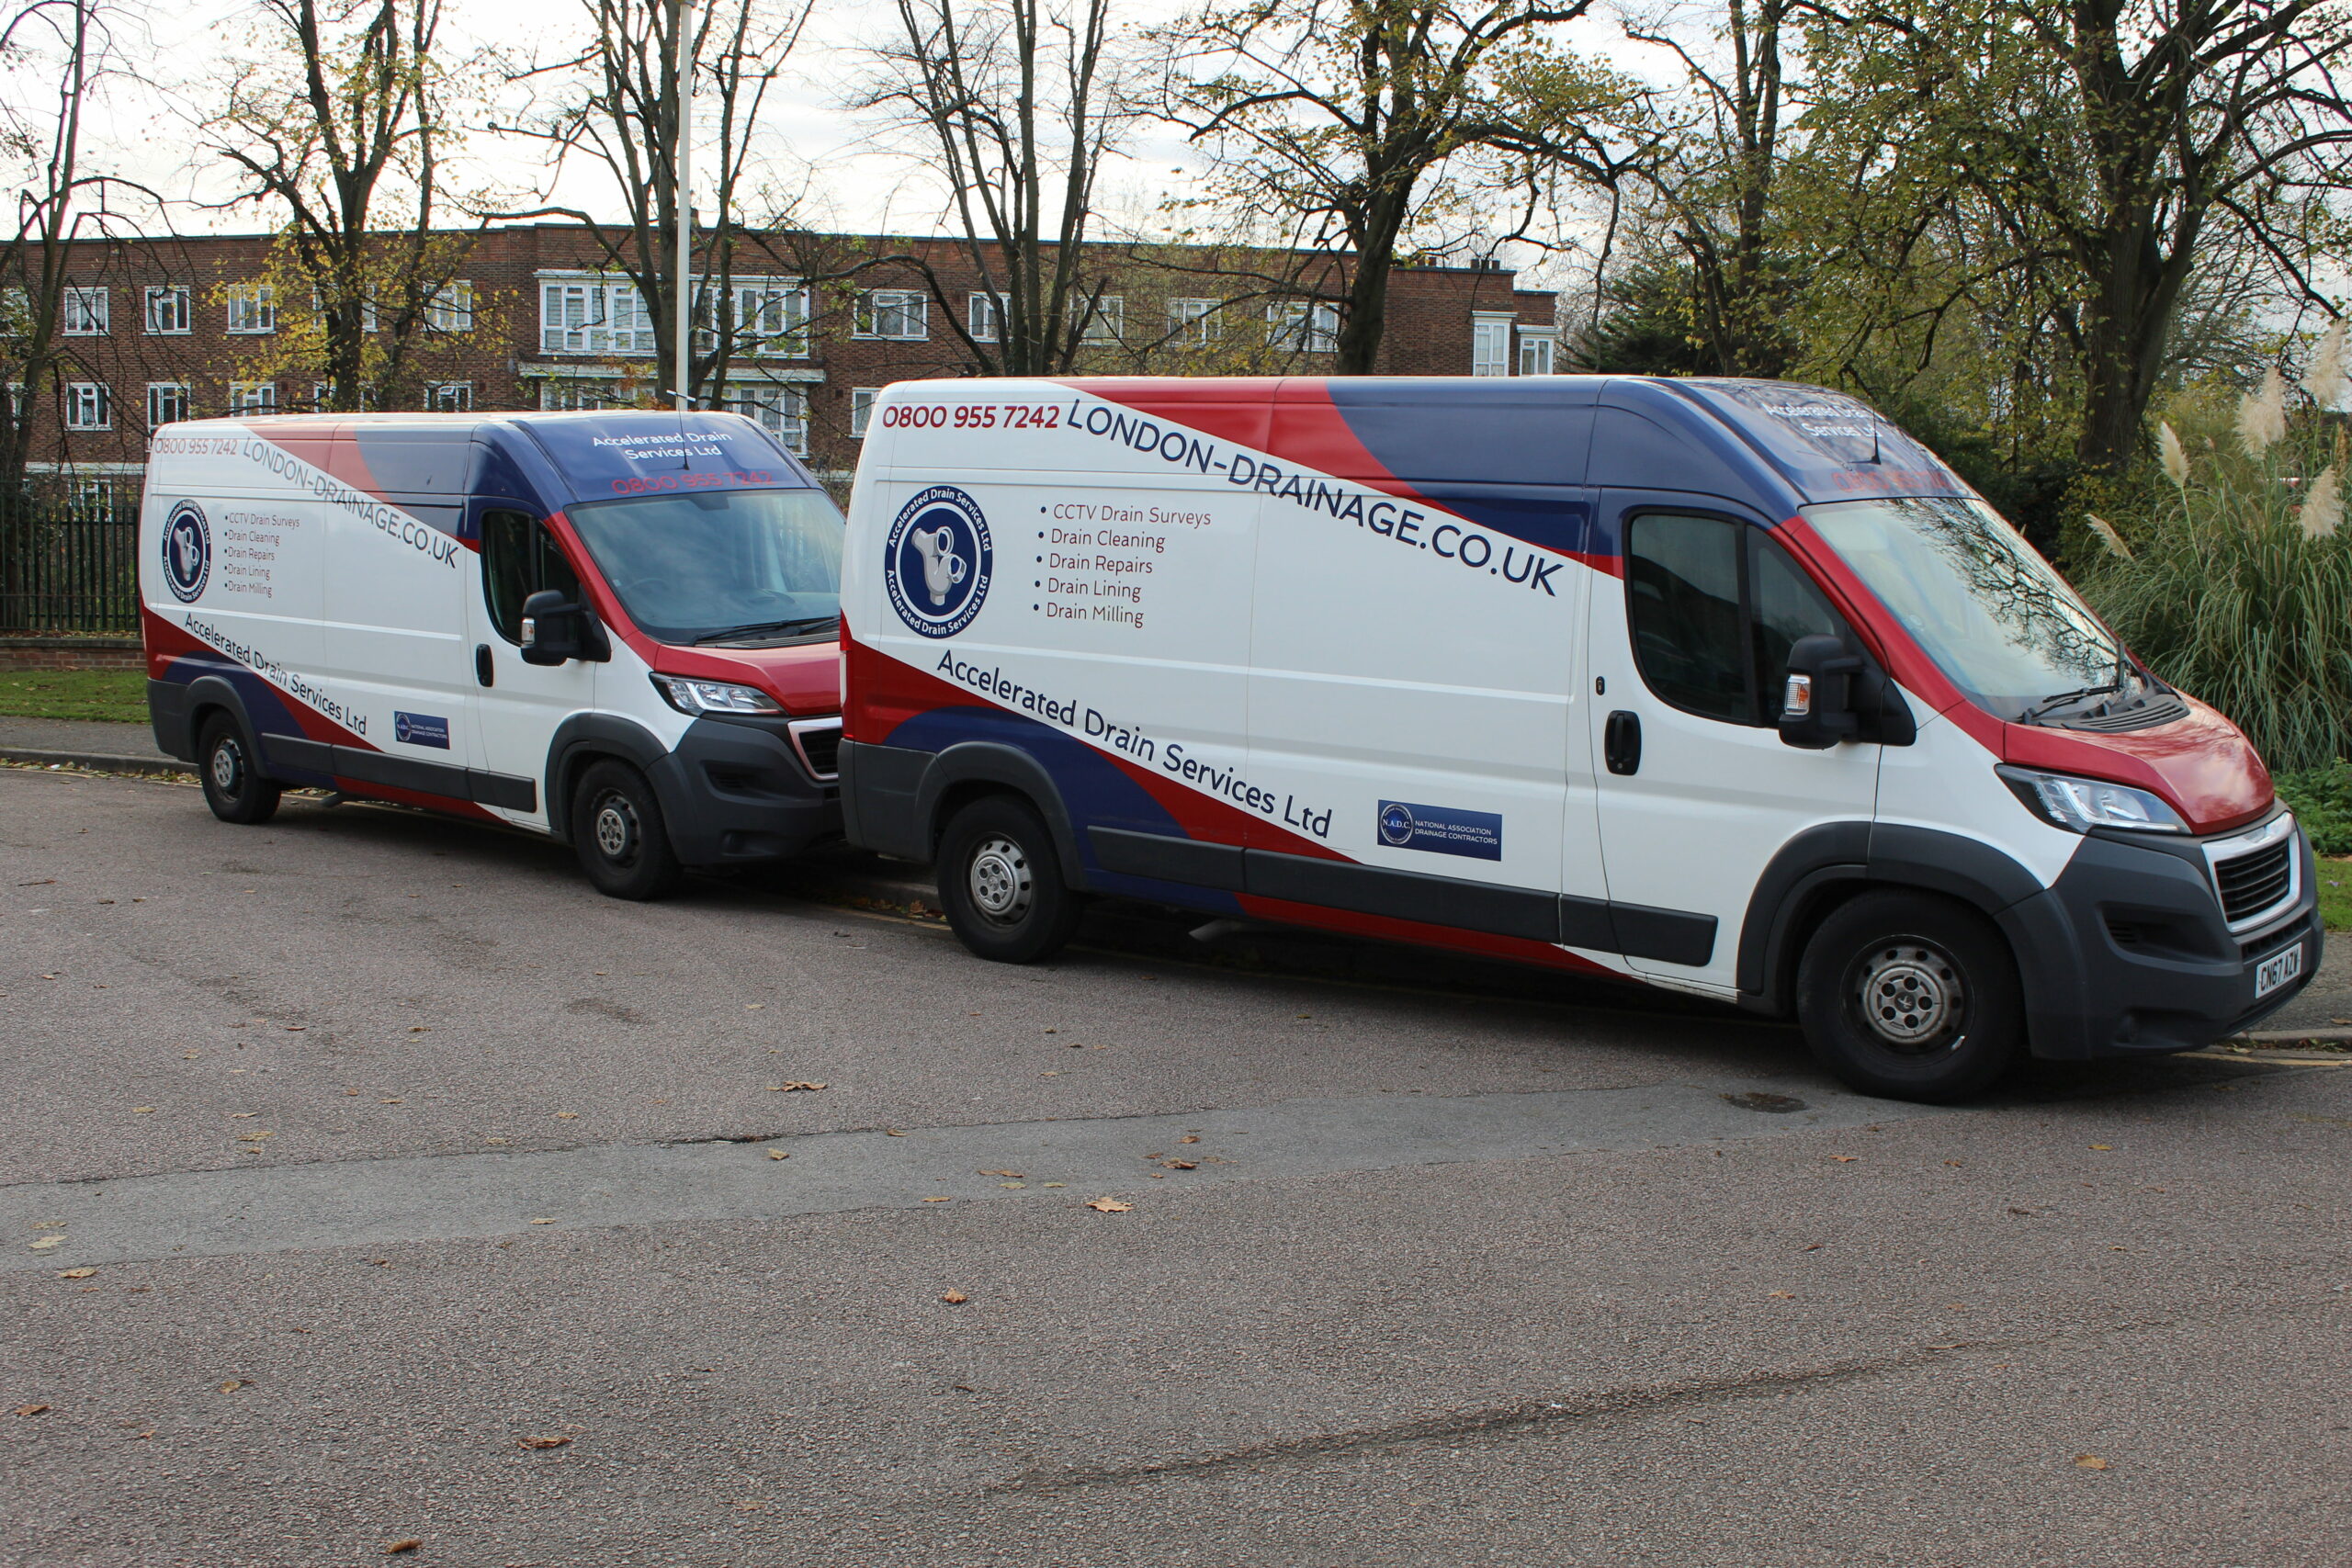 CCTV Drain Surveys Middlesex - Parked White Vans